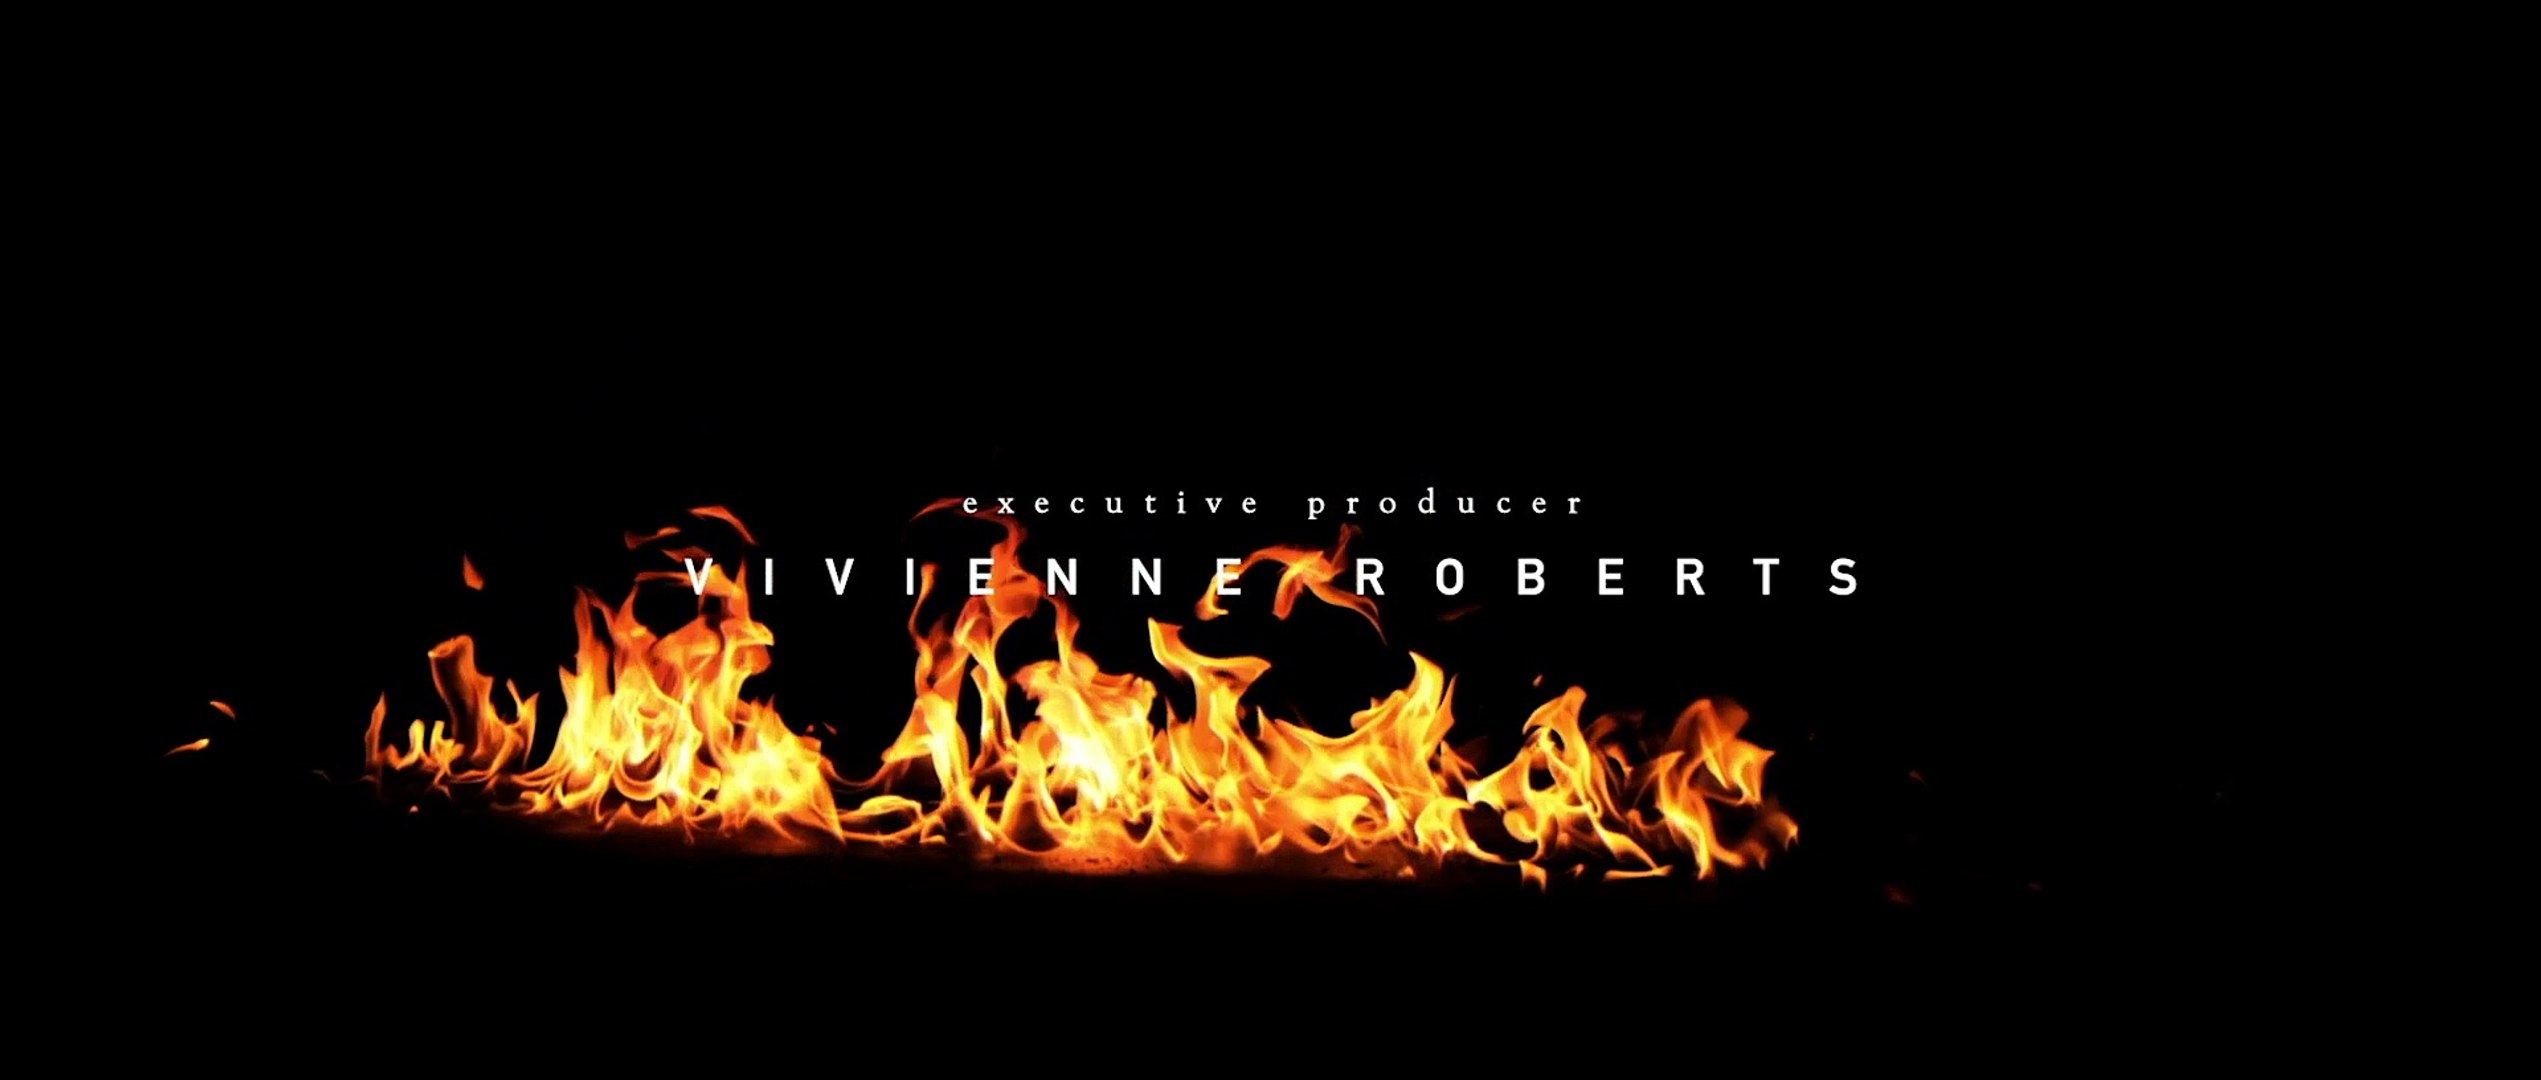 Vingança Implacável - Filme Completo Dublado - Steven Seagal